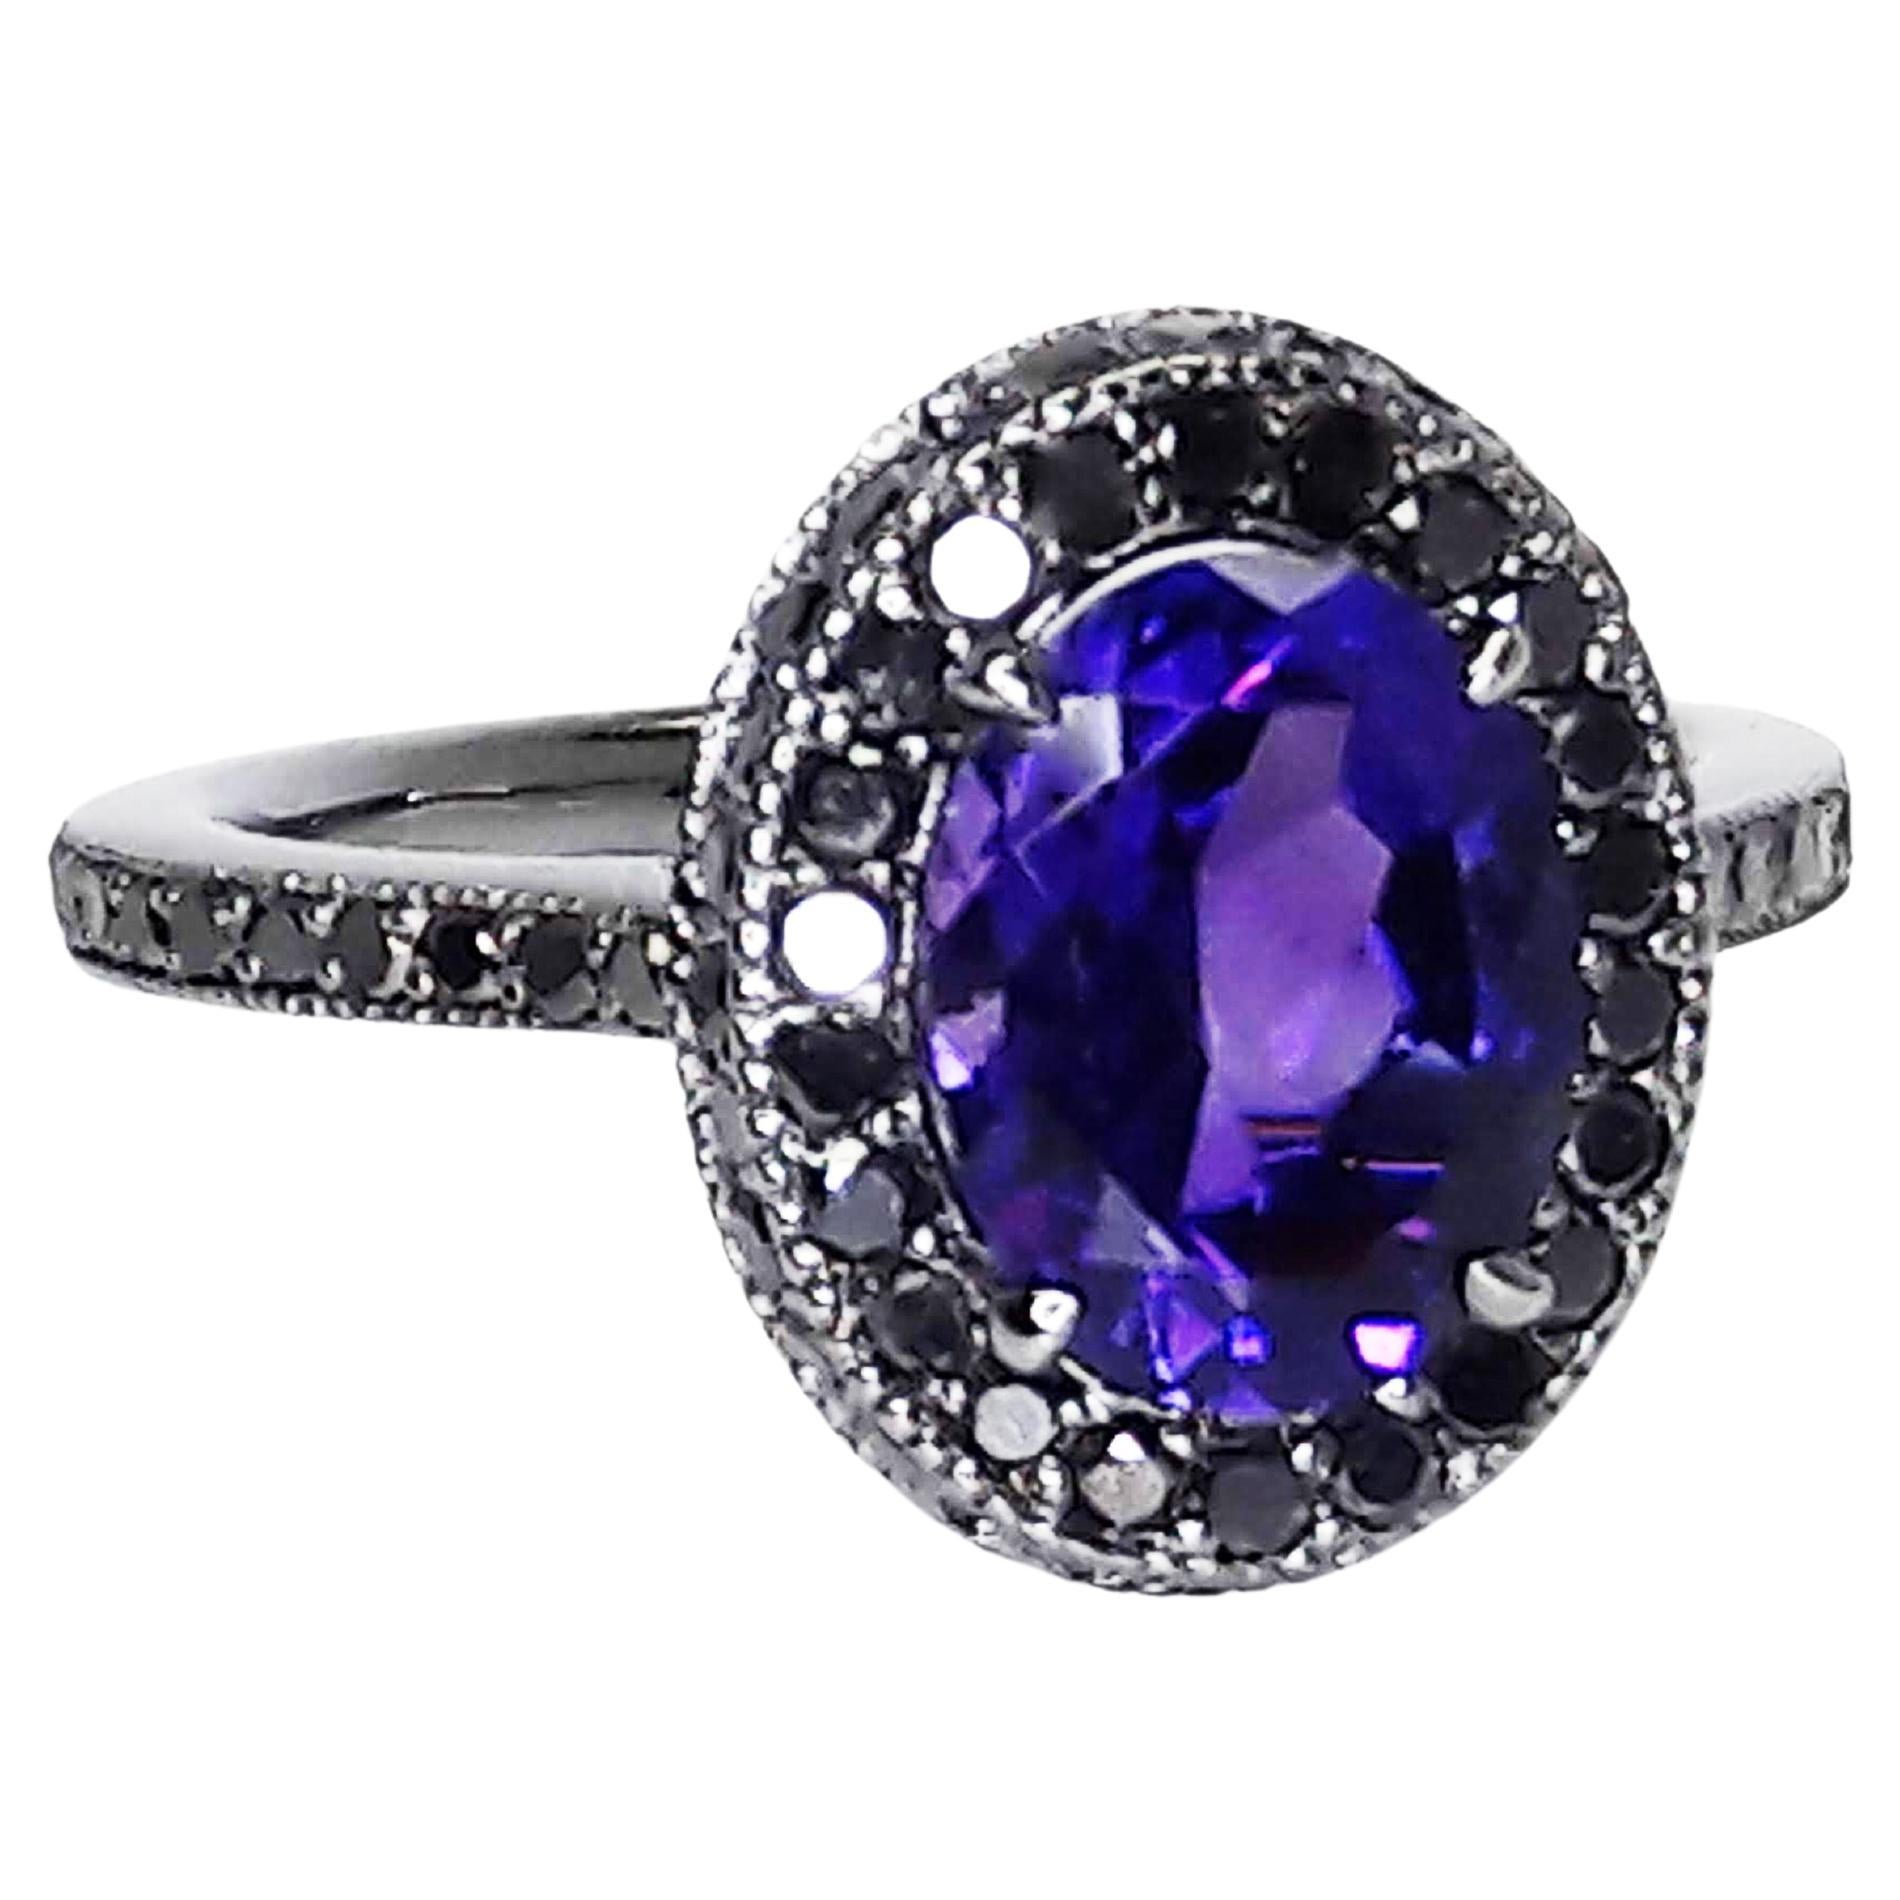 Bague en or 18 carats avec améthyste violette naturelle de 1,5 carat et diamants noirs de 0,52 carat